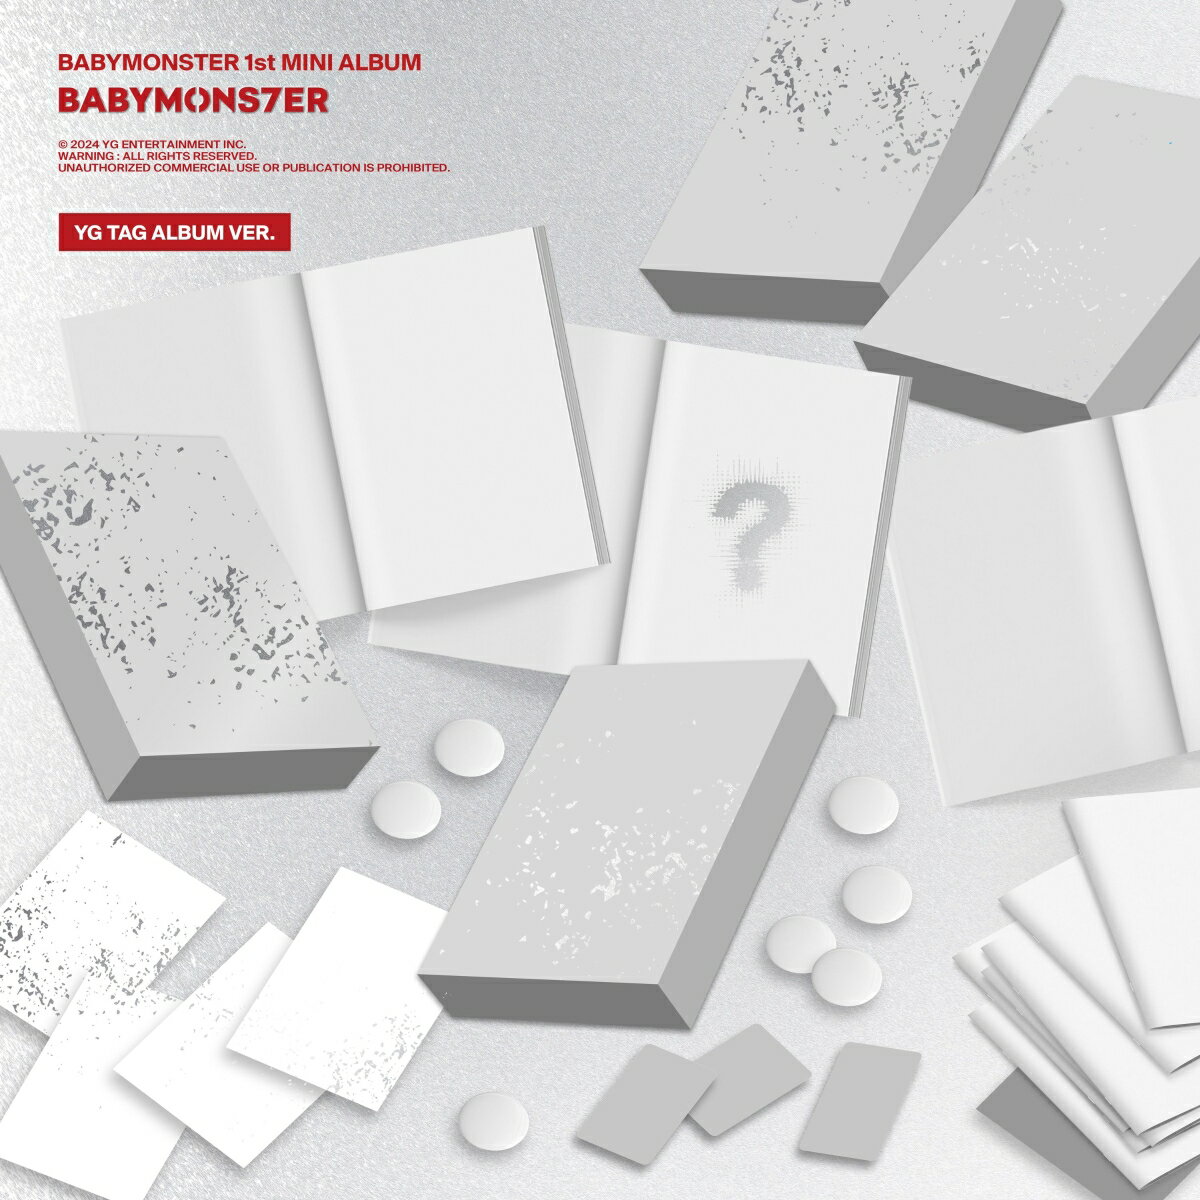 【楽天ブックス限定先着特典】【輸入盤】BABYMONSTER 1st MINI ALBUM [BABYMONS7ER] YG TAG ALBUM VER. (RAMI VER.)(オリジナルL判ブロマイド(Type-B絵柄 / 全7種からランダムで1枚)) [ BABYMONSTER ]